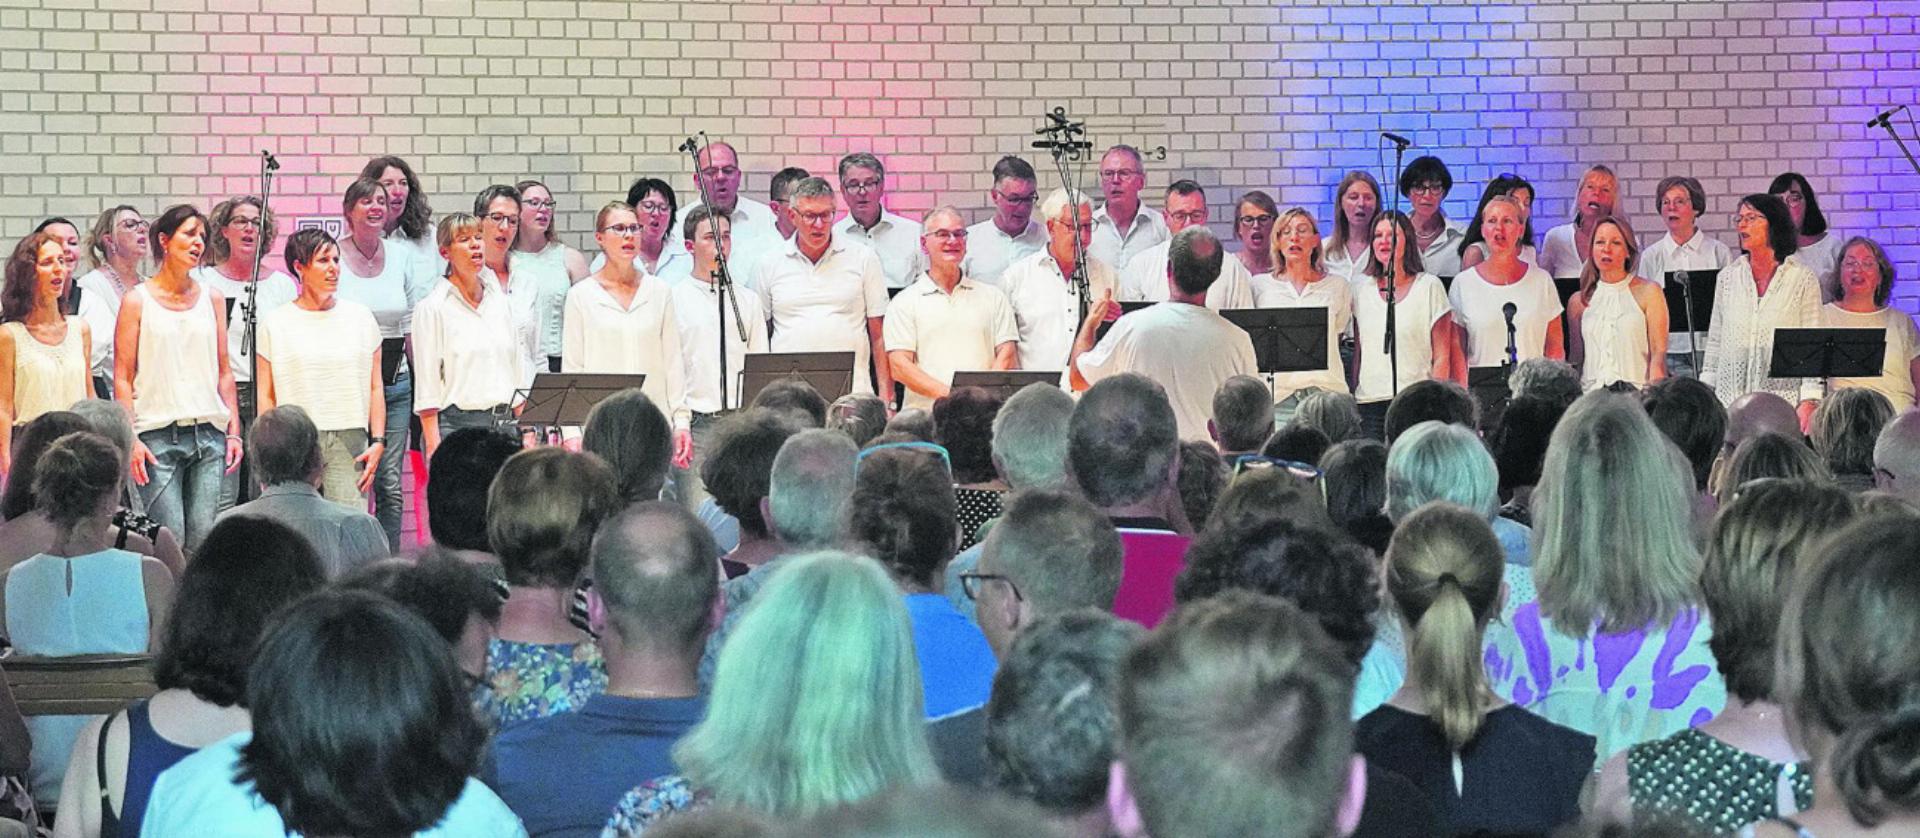 Die Vocal Friends gaben in der voll besetzten reformierten Kirche Hünenberg ein Rock-Konzert. Fotos: ak